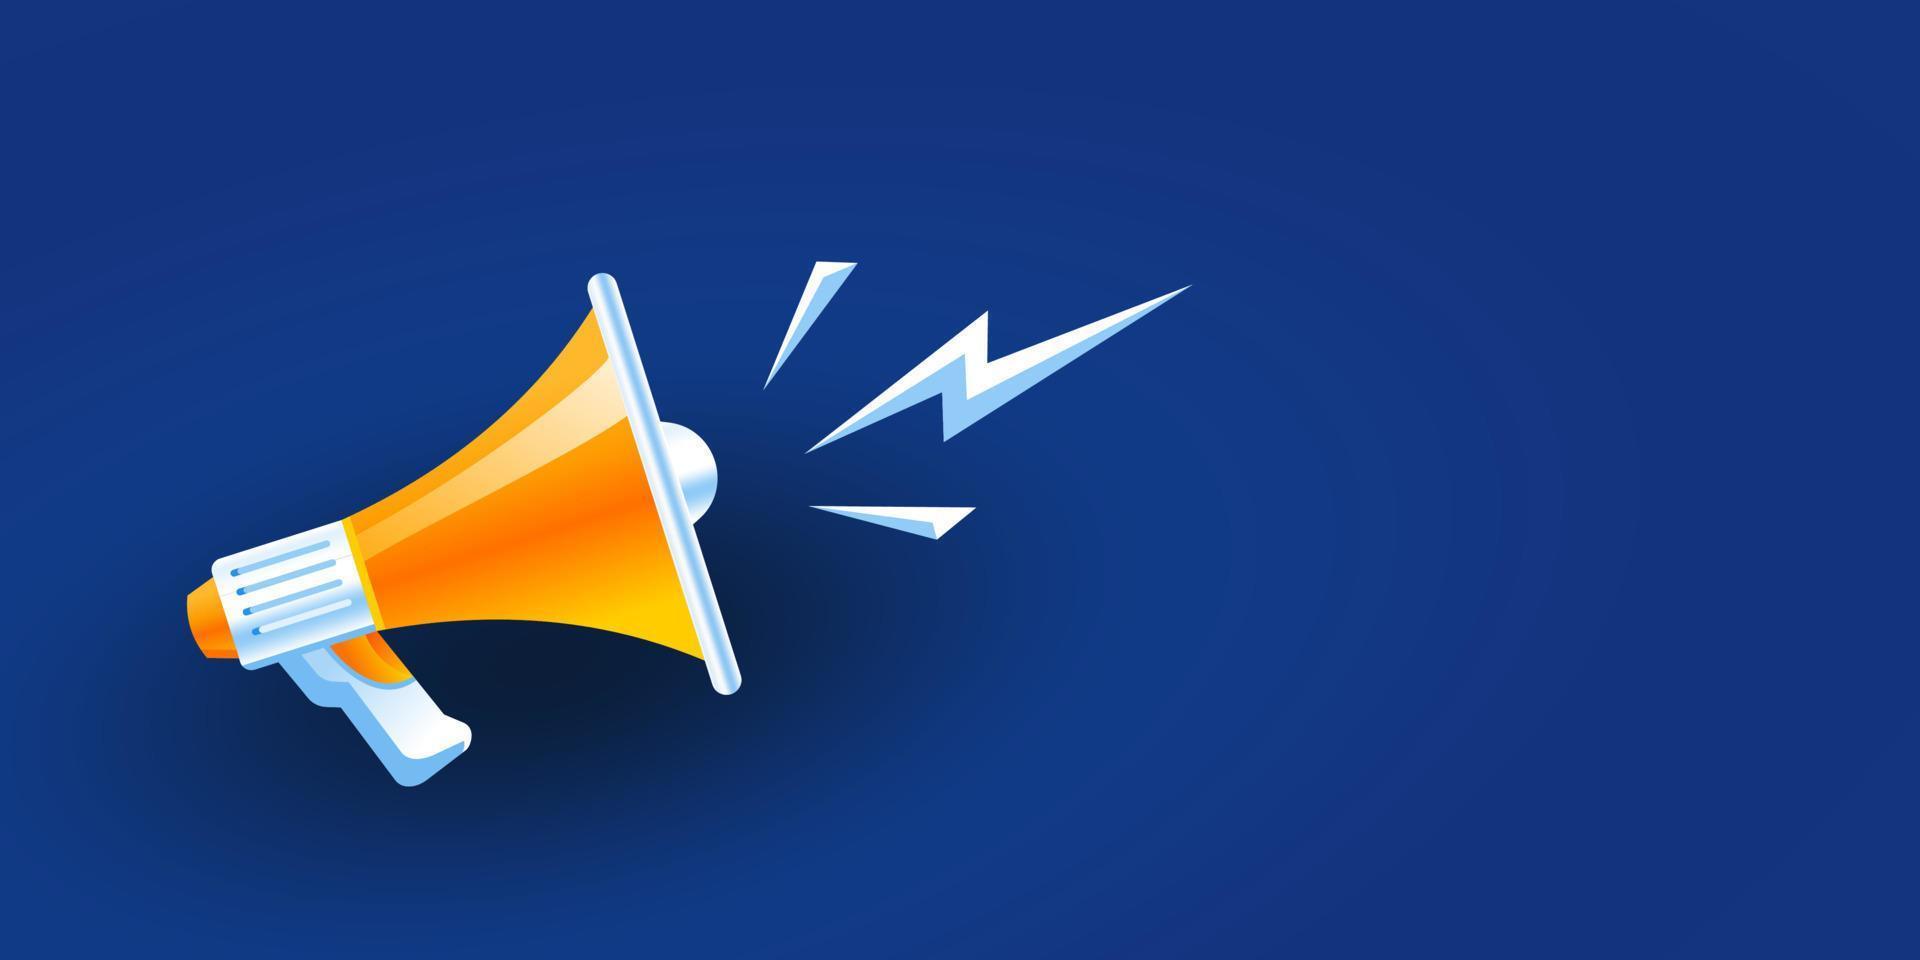 ilustración de vector de megáfono 3d realista naranja y amarillo sobre fondo azul, concepto de altavoz de unirse a nosotros, vacante de trabajo y anuncio en diseño moderno de estilo de dibujos animados planos